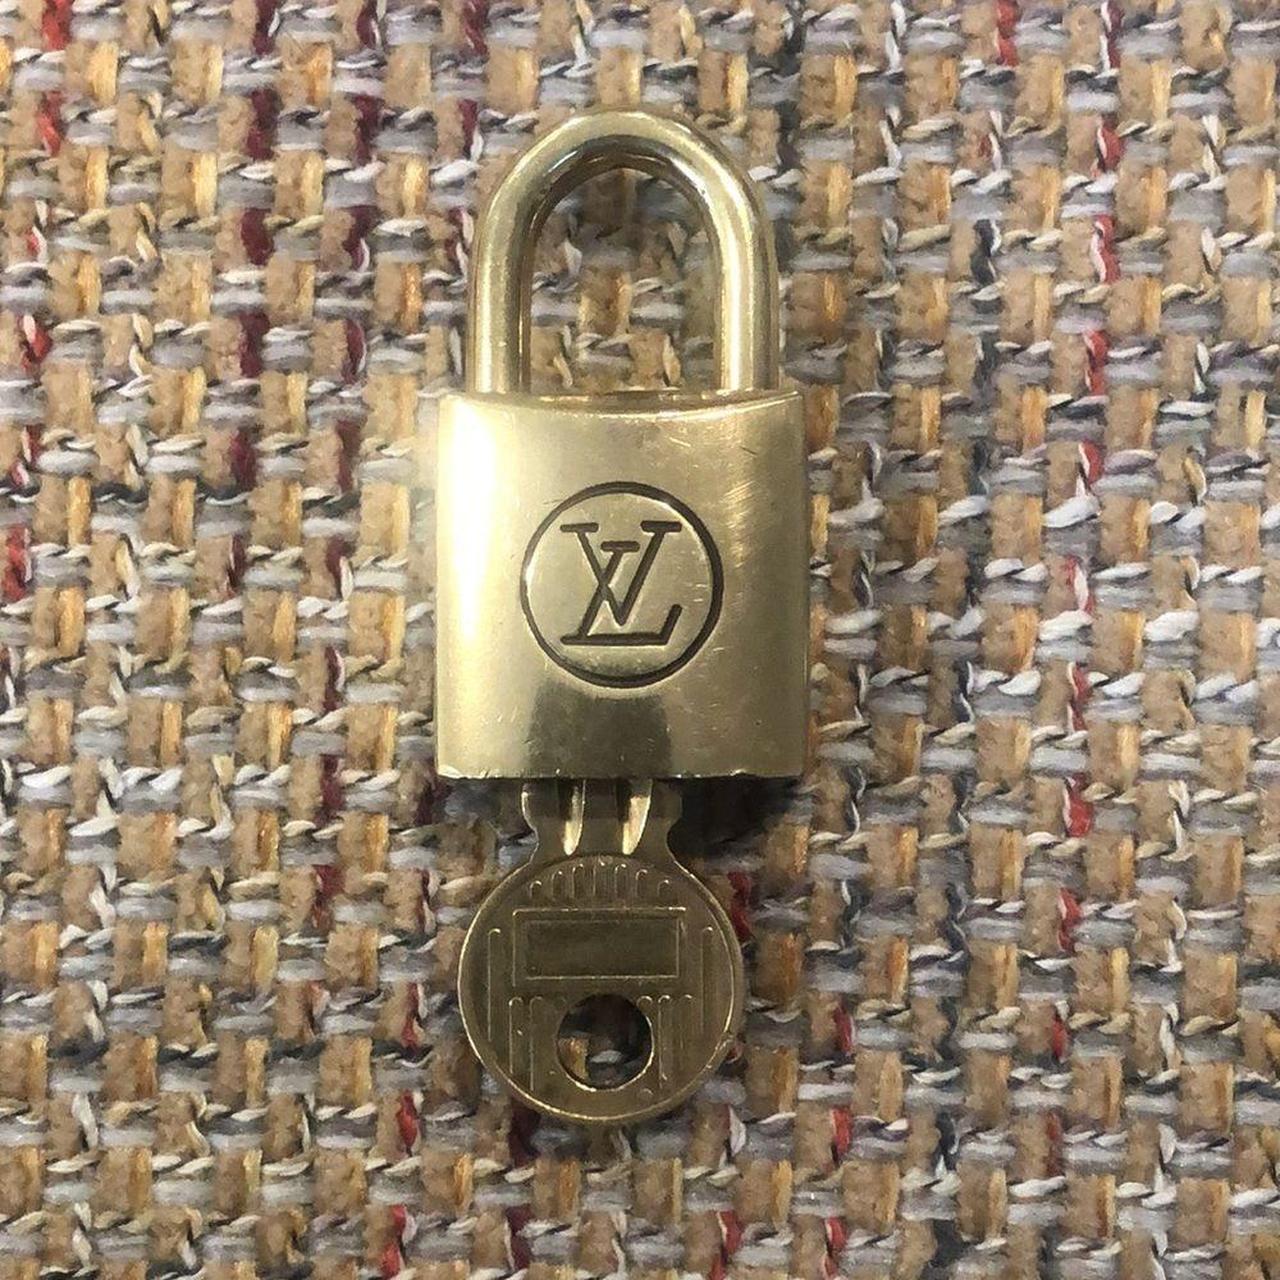 Authentic Louis Vuitton Lock & Key